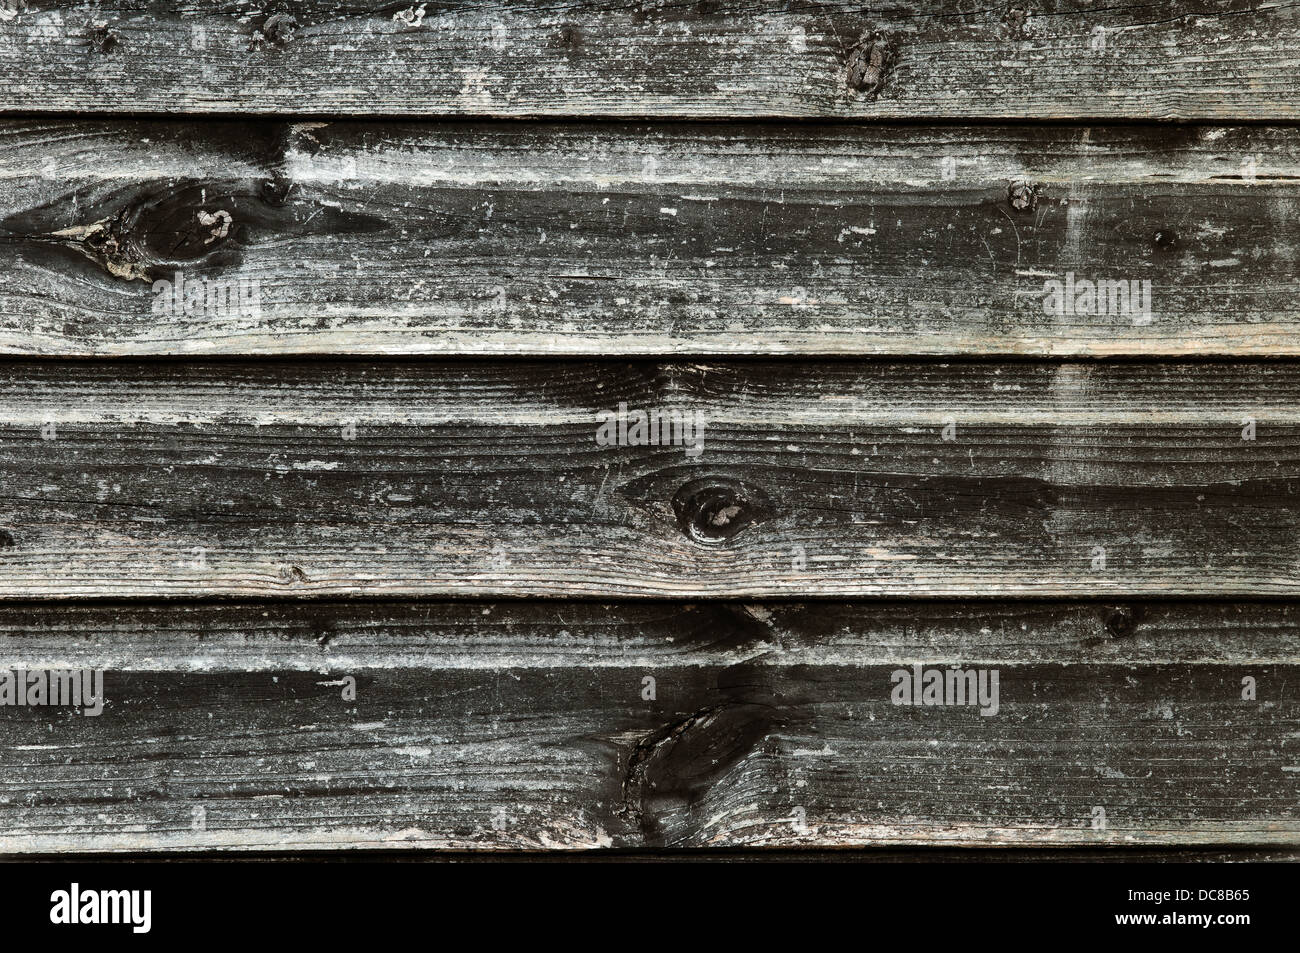 La textura de la madera, con aspecto erosionado, antiguo y oscuro - vintage Foto de stock